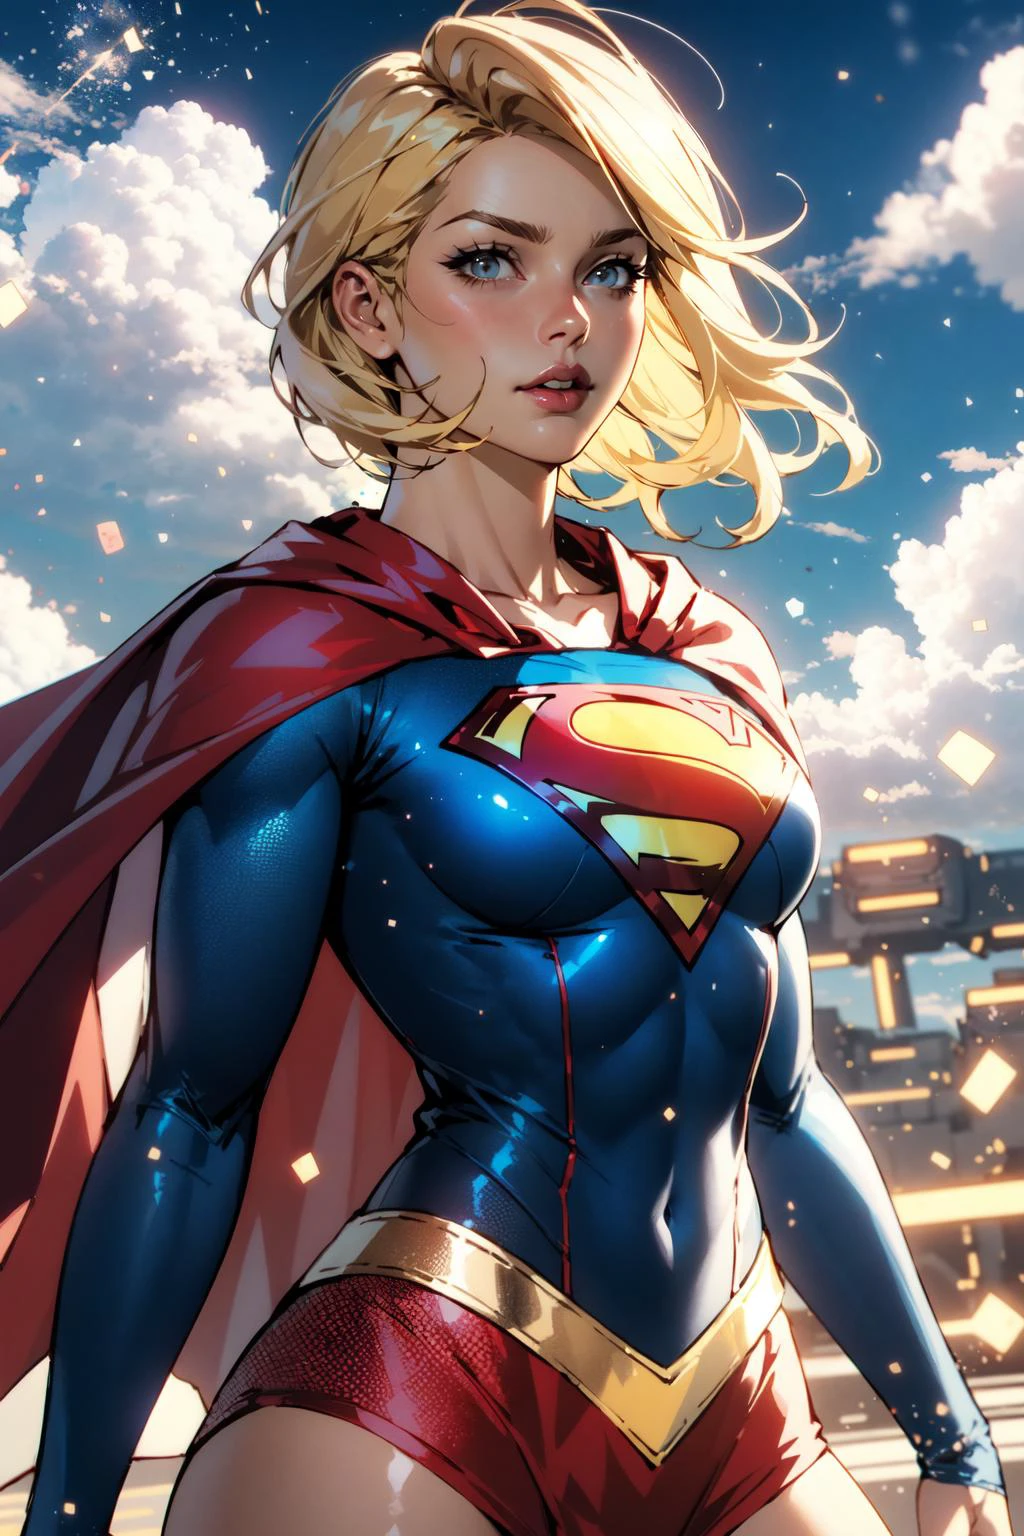 nijistyle, photo de cow-boy de supergirl, cheveux blond, cap, particules, des nuages, ciel 